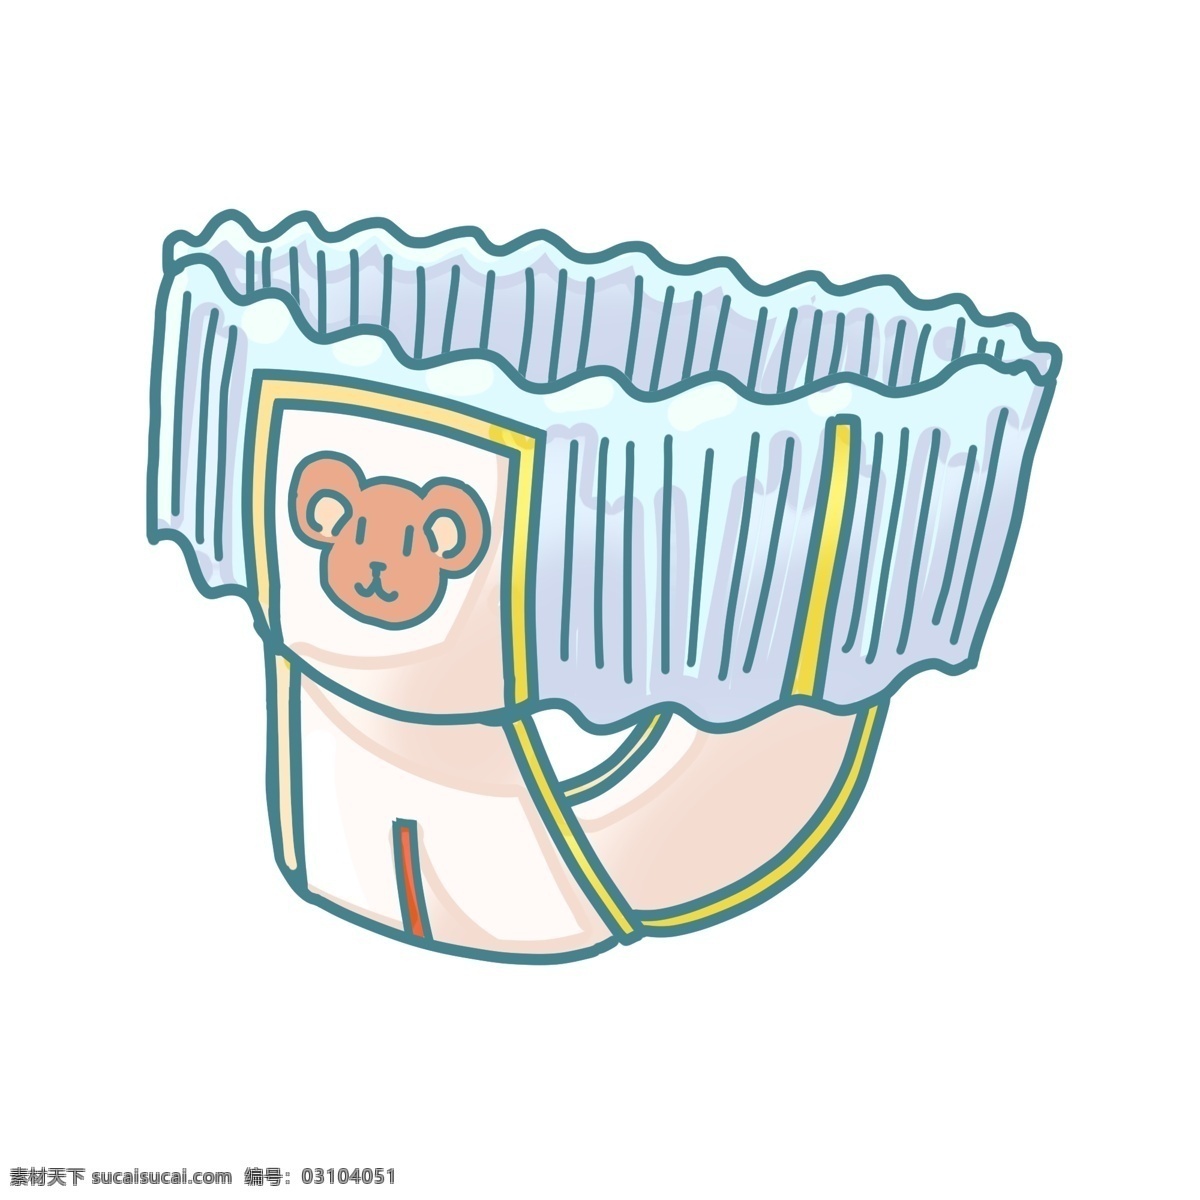 卡通 婴儿 纸尿裤 插画 婴儿用品插画 创意插画 蓝色的花边 婴儿纸尿裤 卡通小熊 卡通纸尿裤